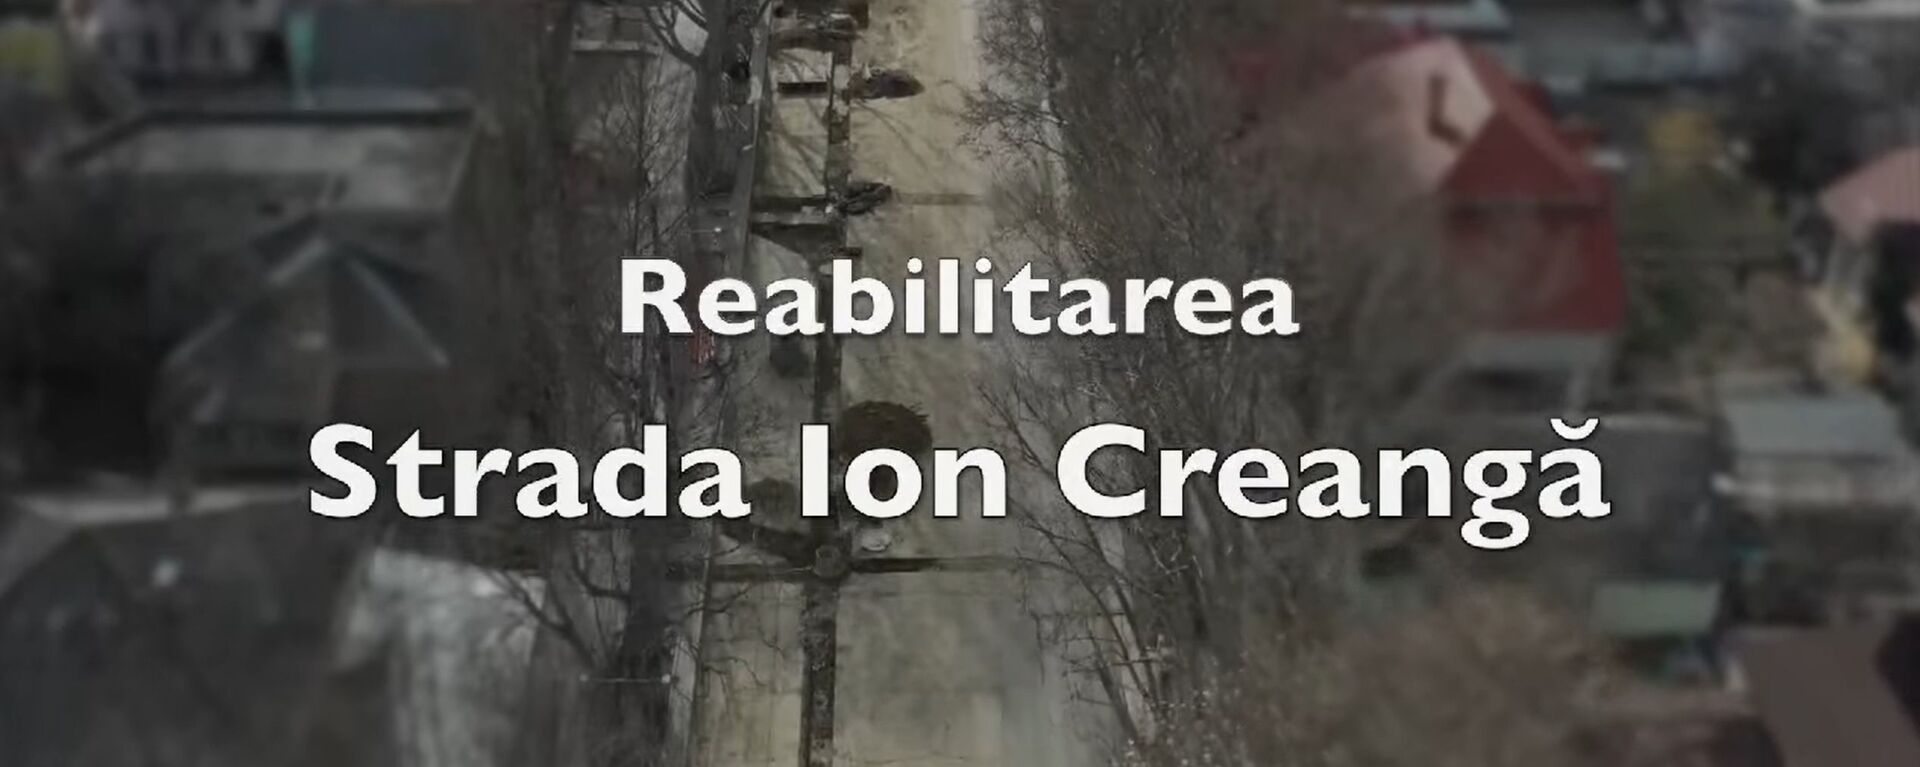 Reabilitarea străzii Ion Creangă din Chișinău - Sputnik Moldova, 1920, 22.03.2021